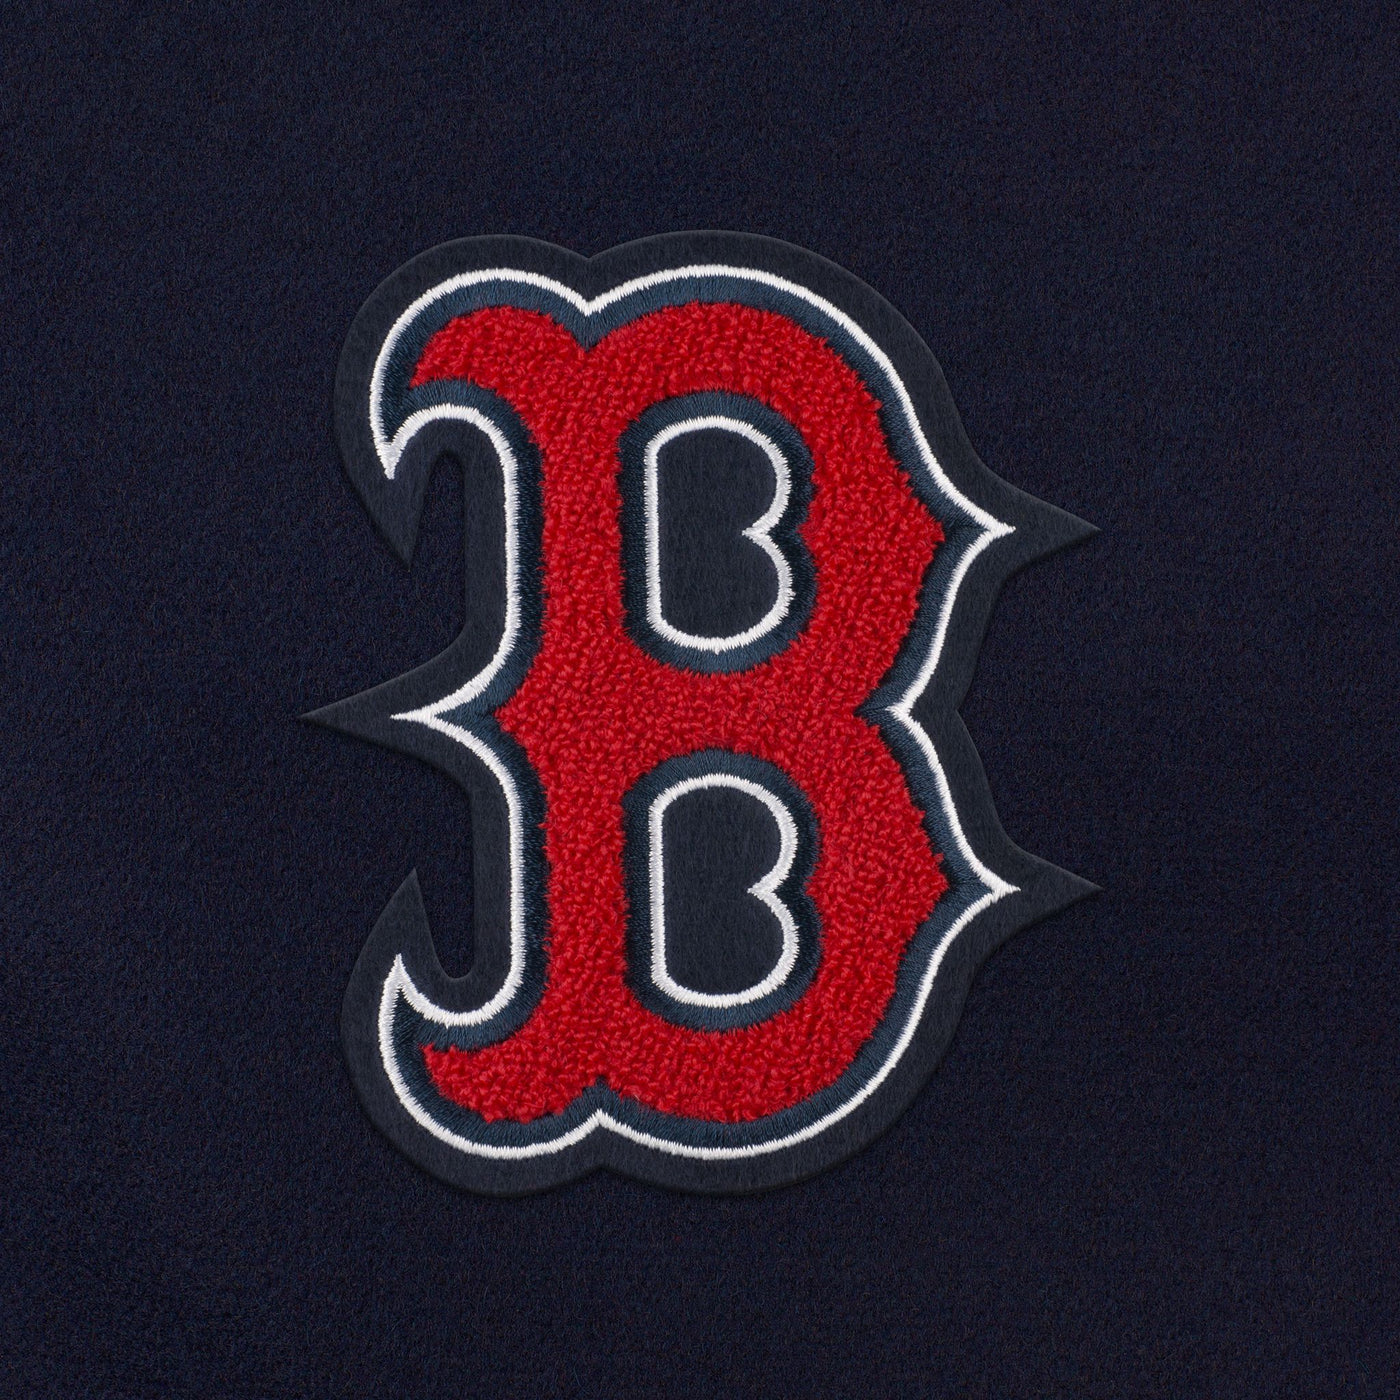 Boston Red Sox "B" Weekender Duffle Bag